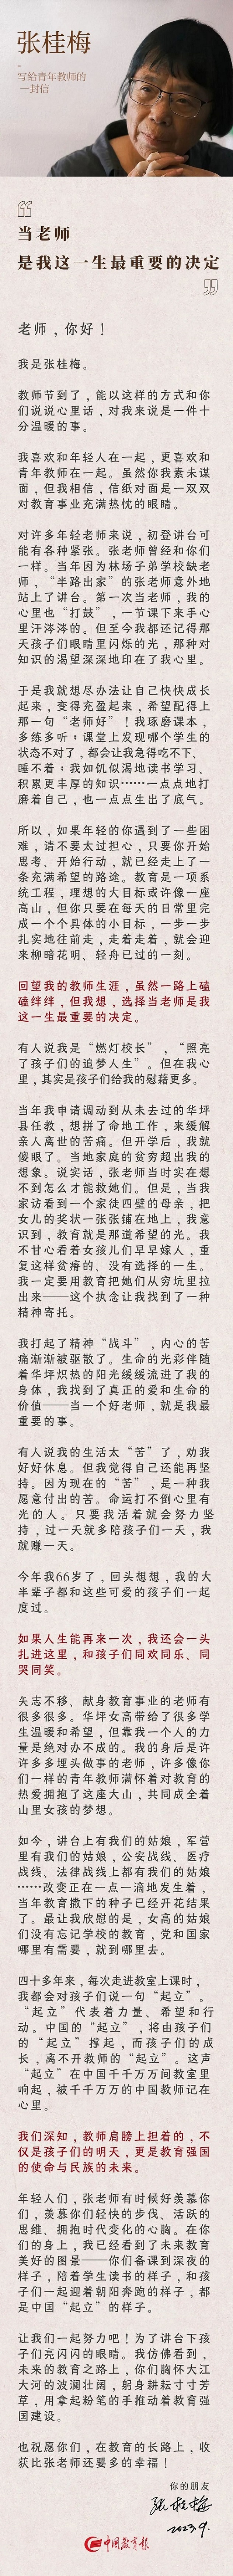 张桂梅写给青年教师的一封信.jpg